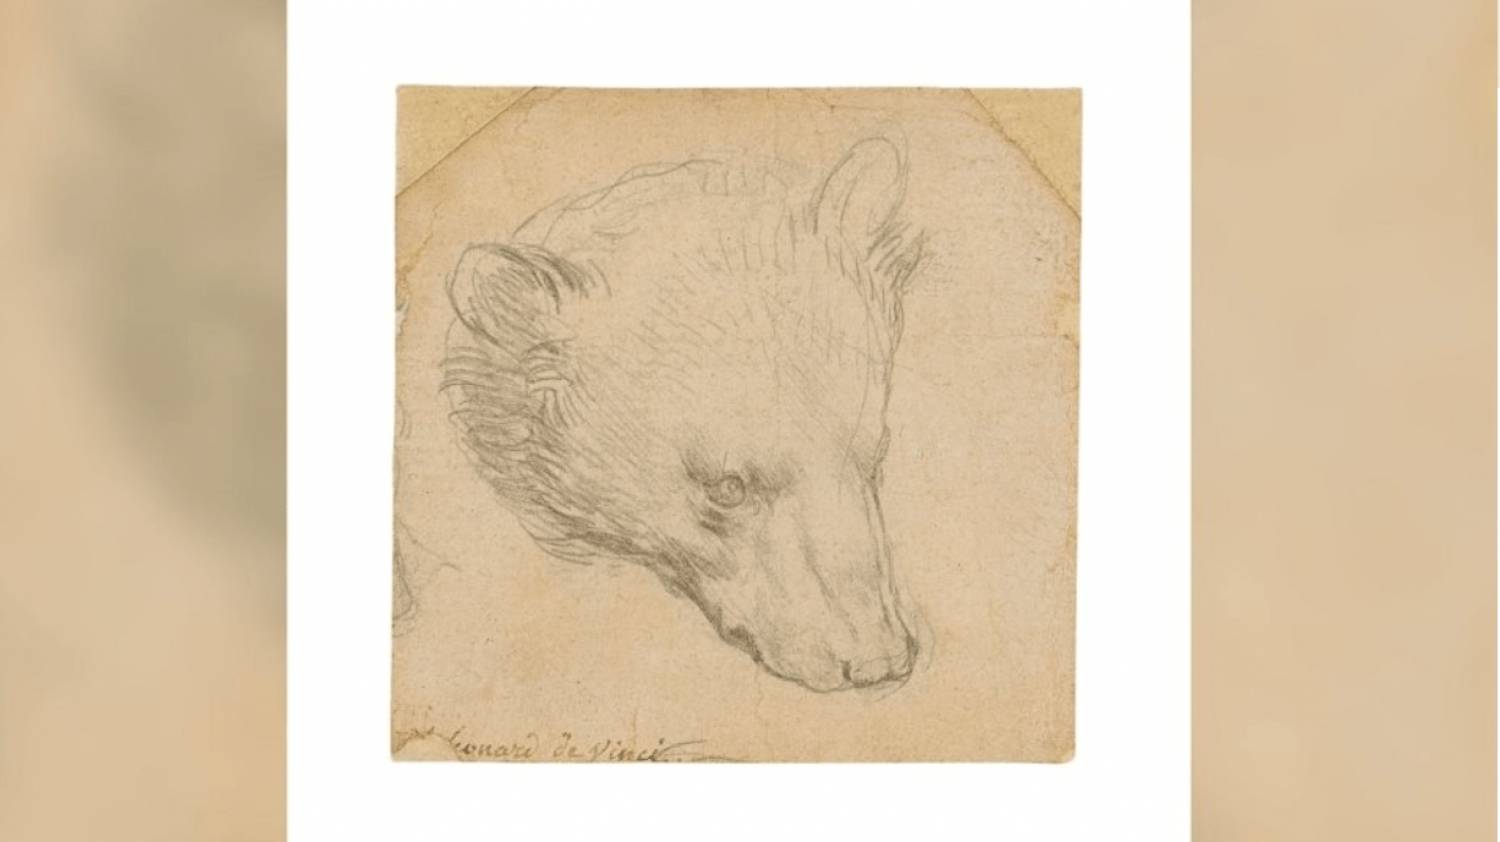 Σε δημοπρασία βγάζει ο οίκος Christie's το «κεφάλι της αρκούδας» του Ντα Βίντσι